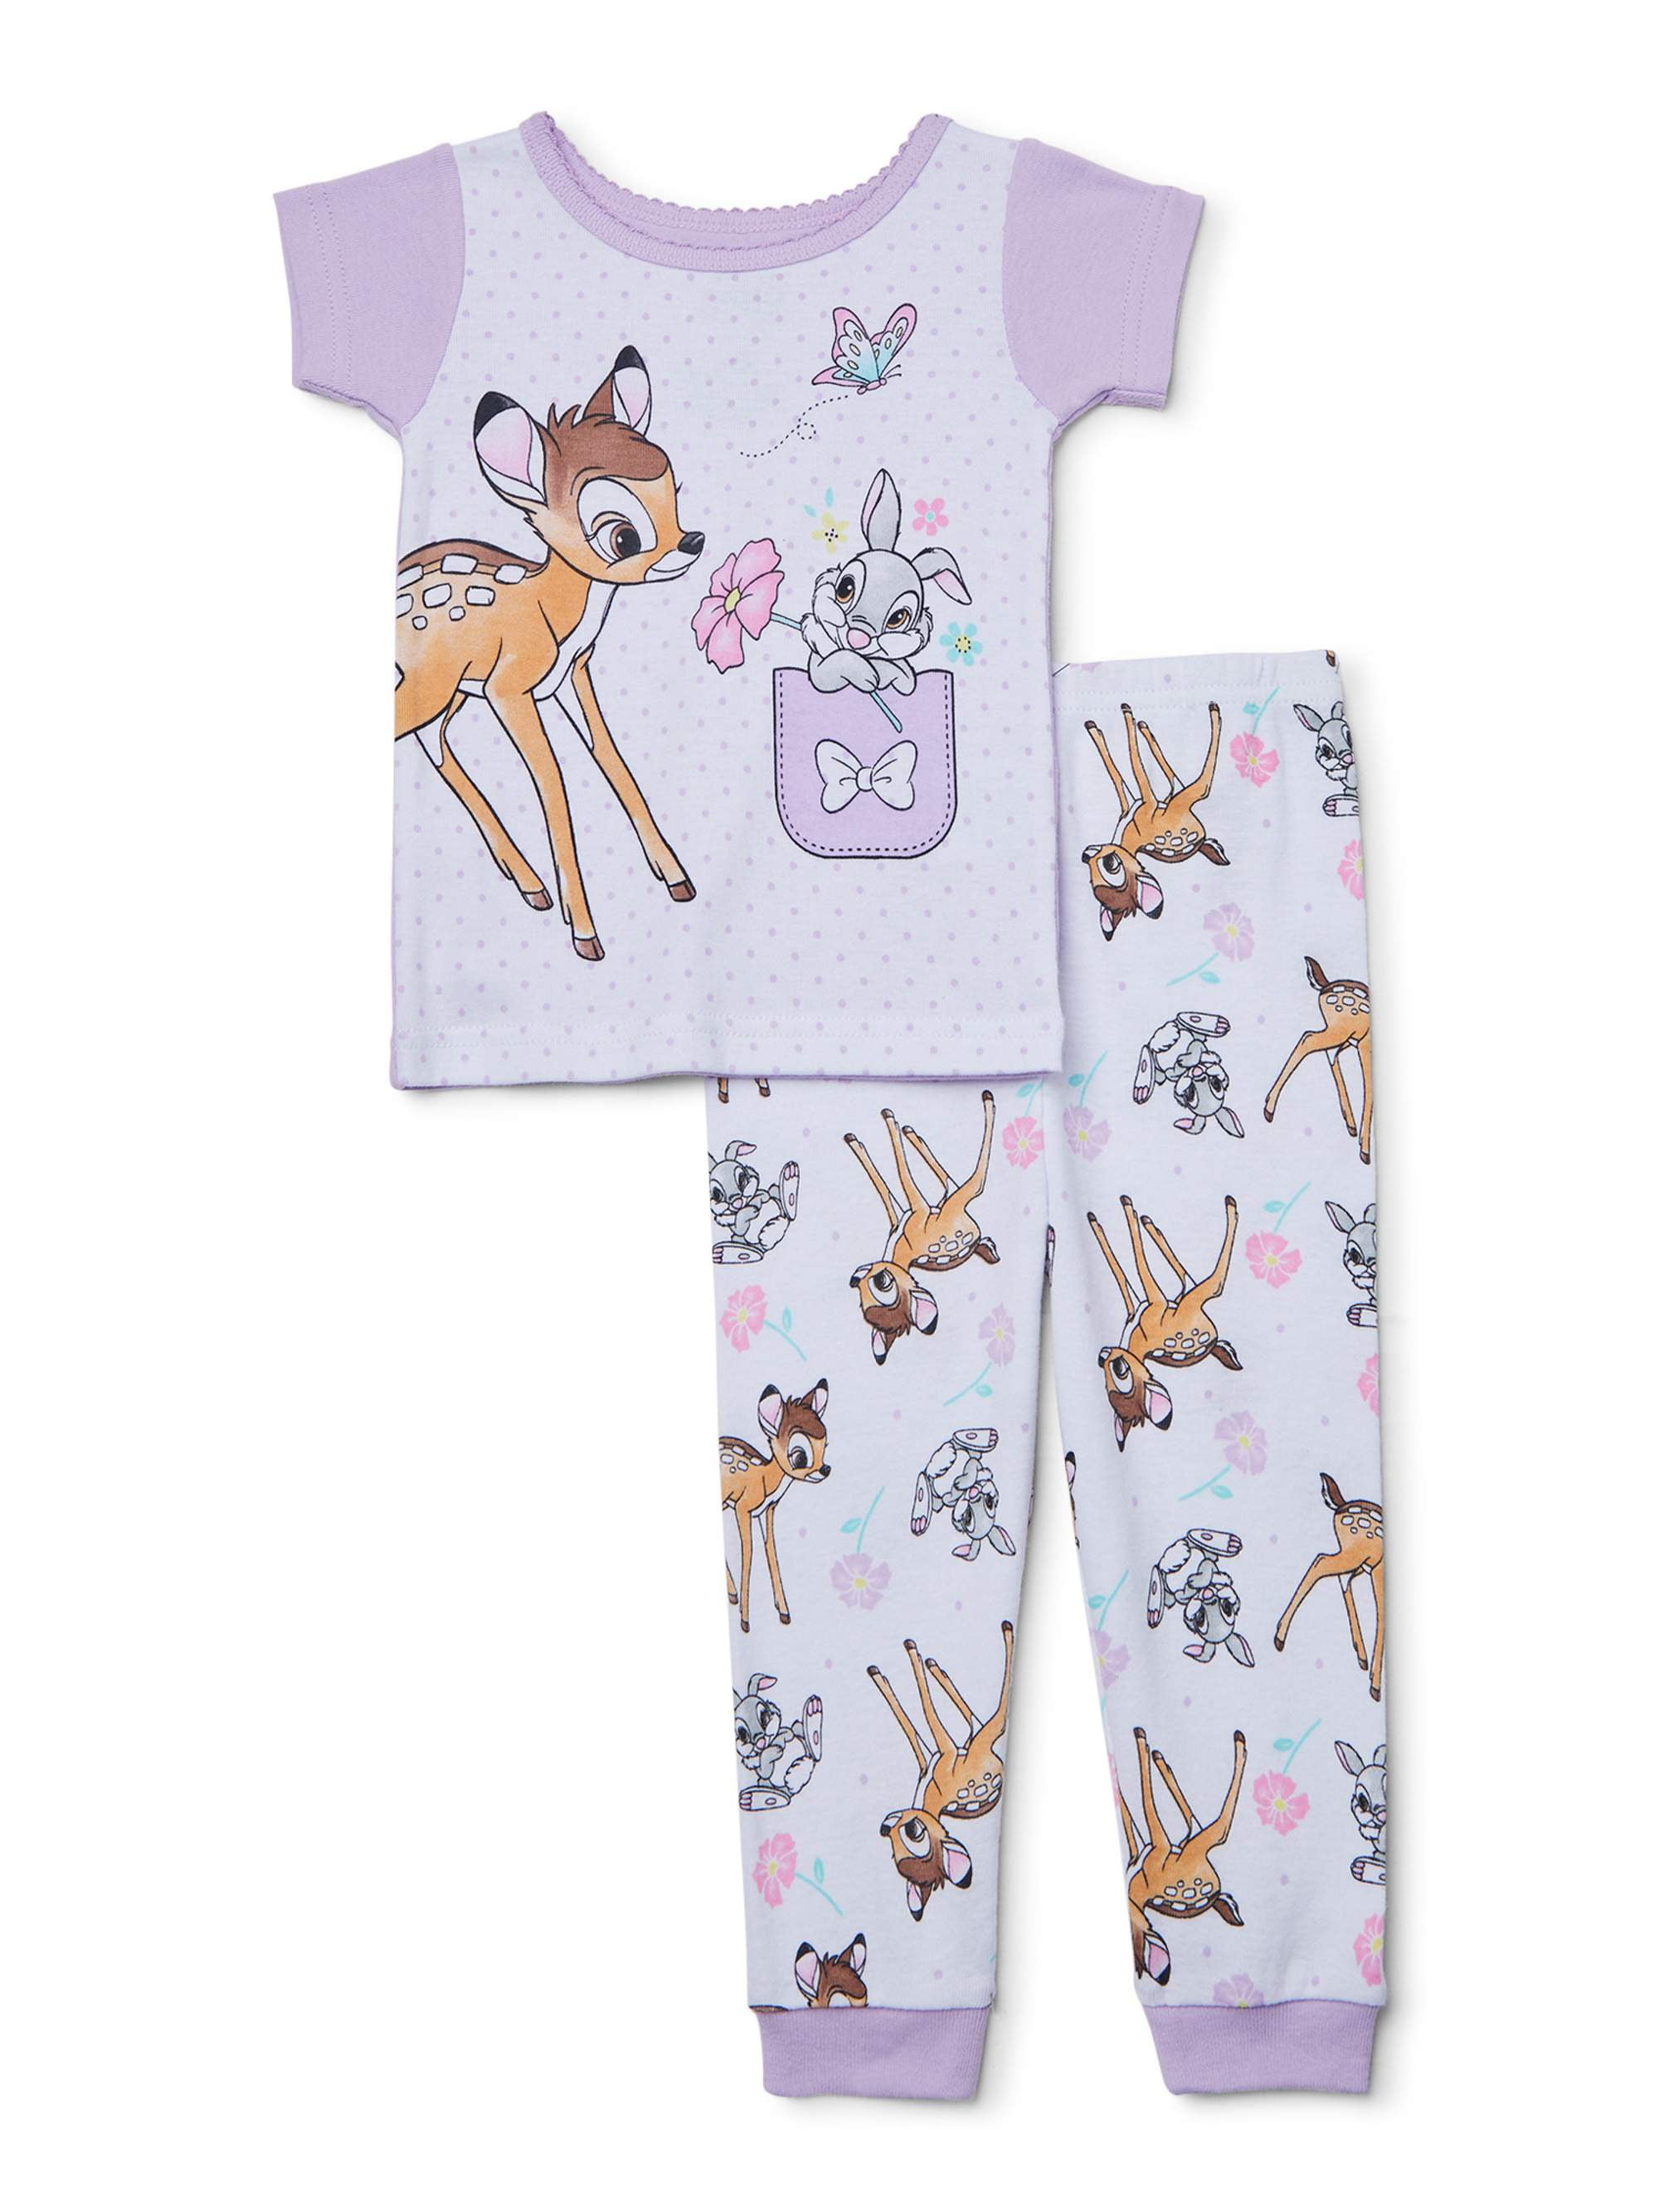 bambi baby girl clothes